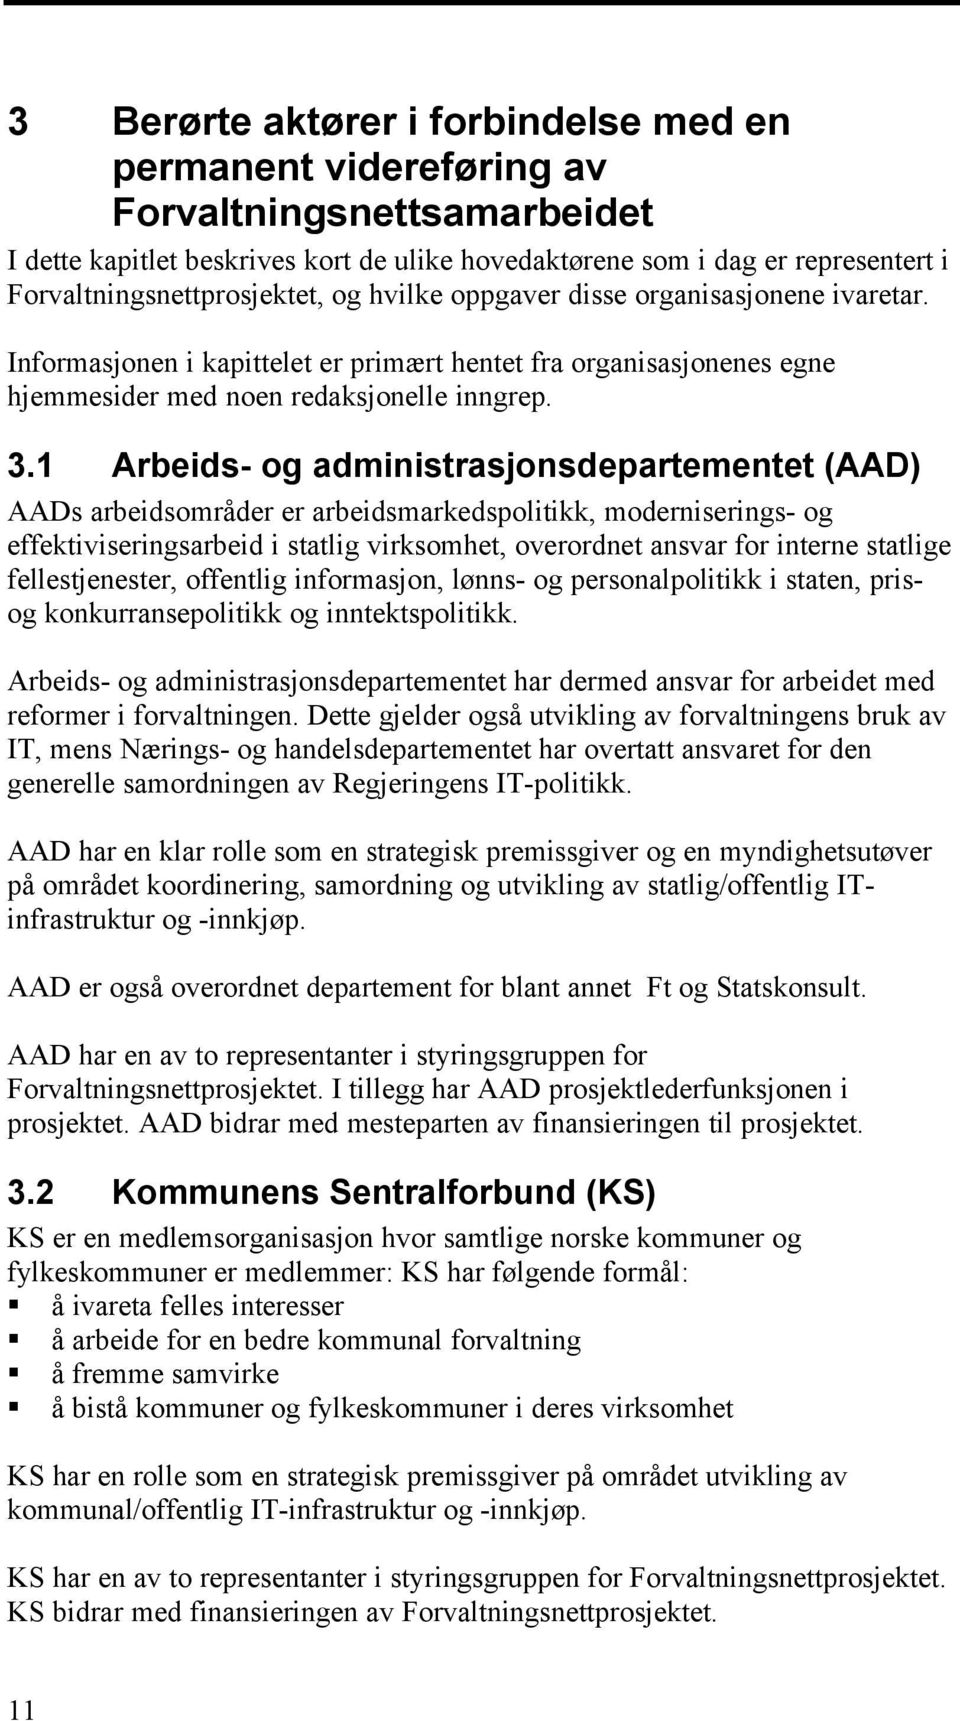 1 Arbeids- og administrasjonsdepartementet (AAD) AADs arbeidsområder er arbeidsmarkedspolitikk, moderniserings- og effektiviseringsarbeid i statlig virksomhet, overordnet ansvar for interne statlige